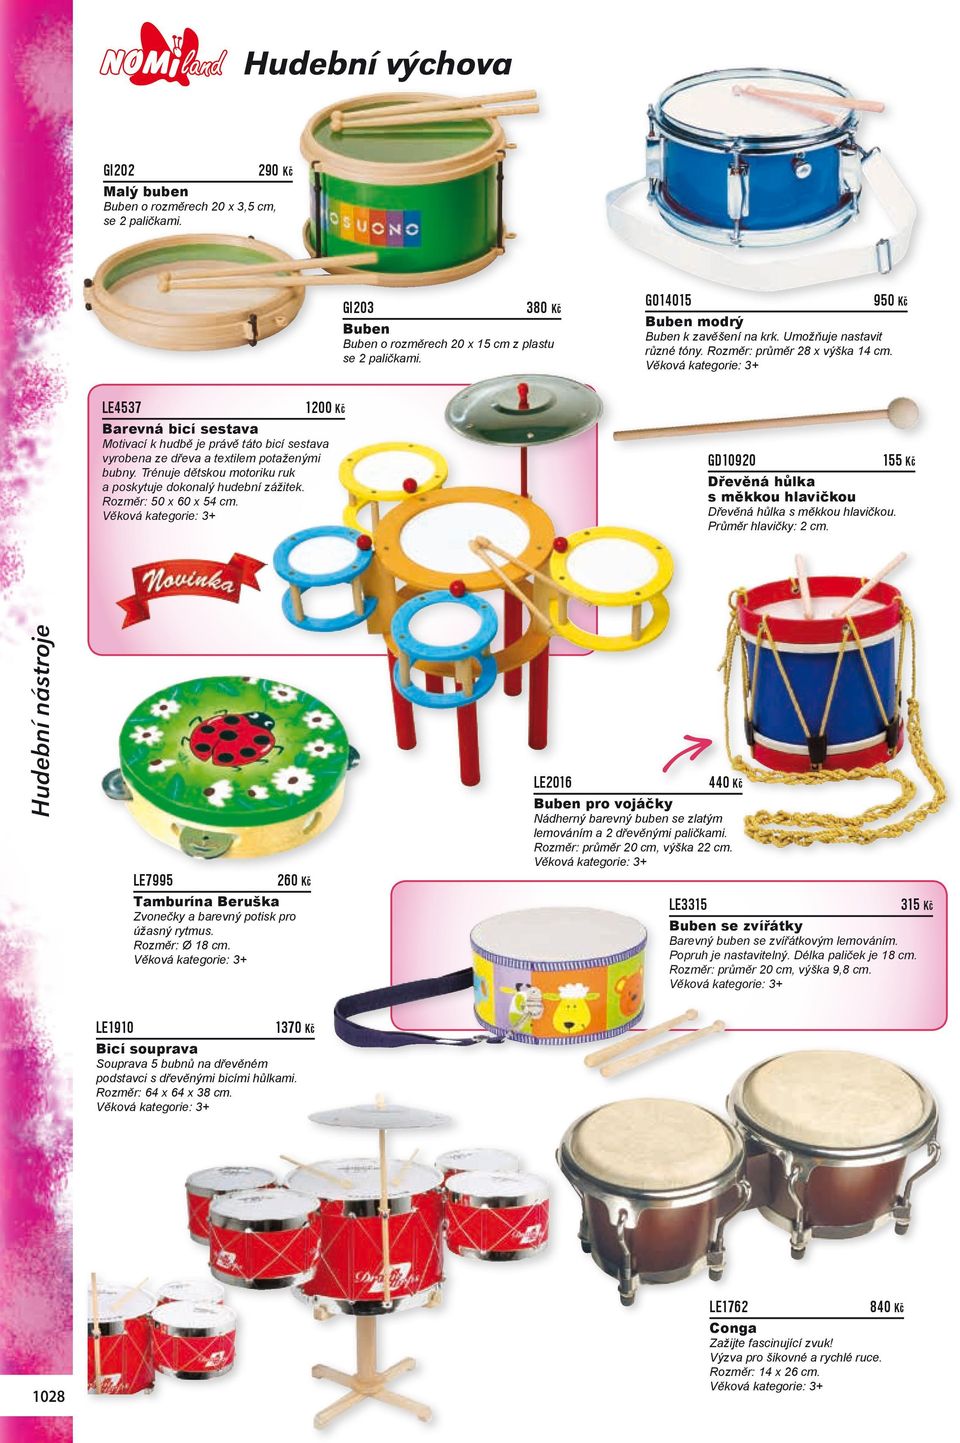 LE4537 1200 Kč Barevná bicí sestava Motivací k hudbě je právě táto bicí sestava vyrobena ze dřeva a textilem potaženými bubny. Trénuje dětskou motoriku ruk a poskytuje dokonalý hudební zážitek.